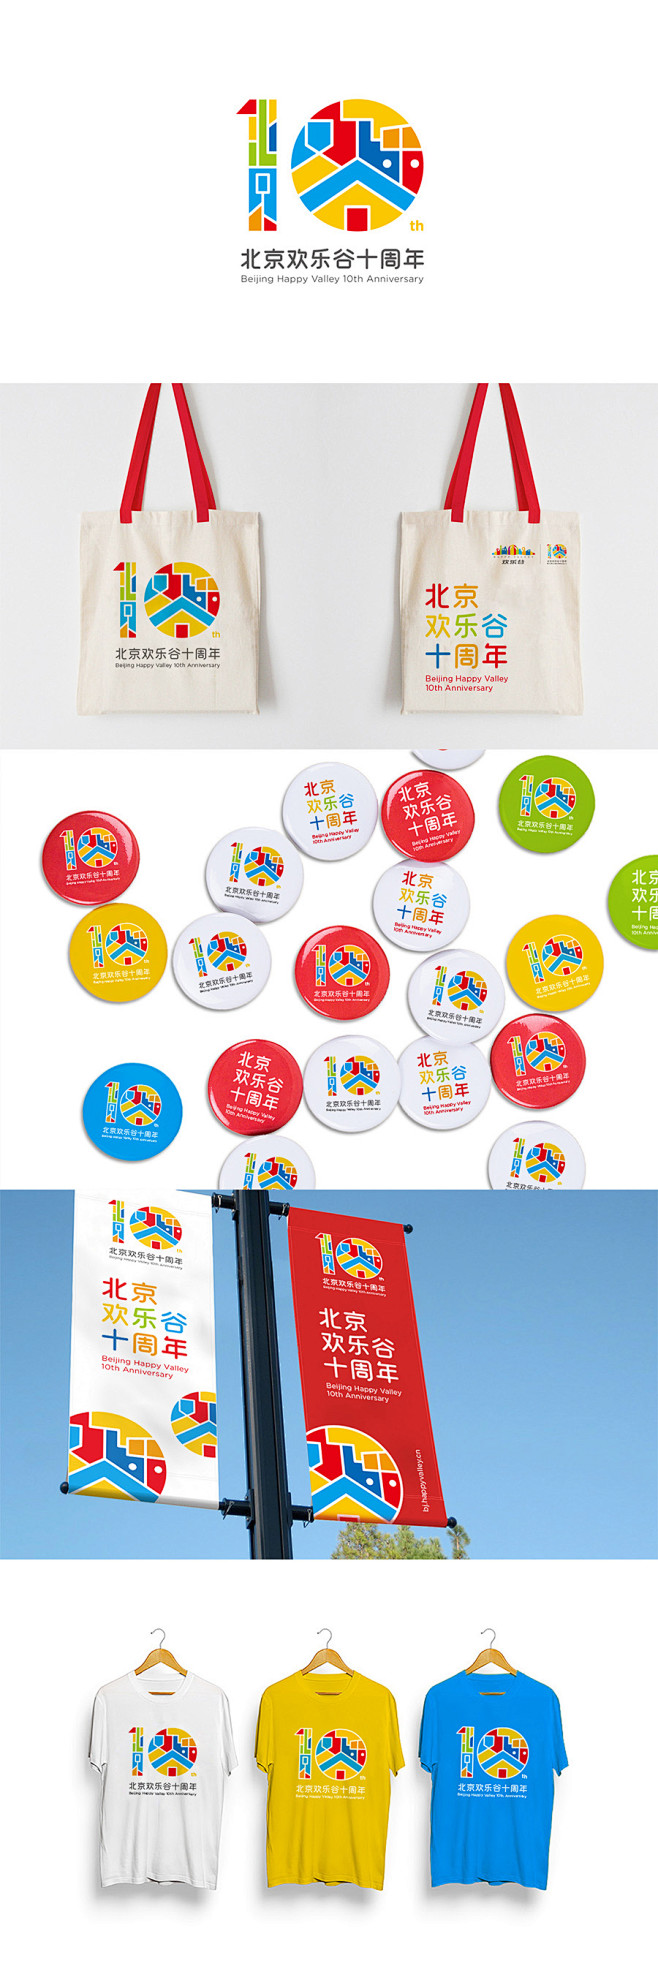 北京欢乐谷十周年logo优胜奖方案 #l...